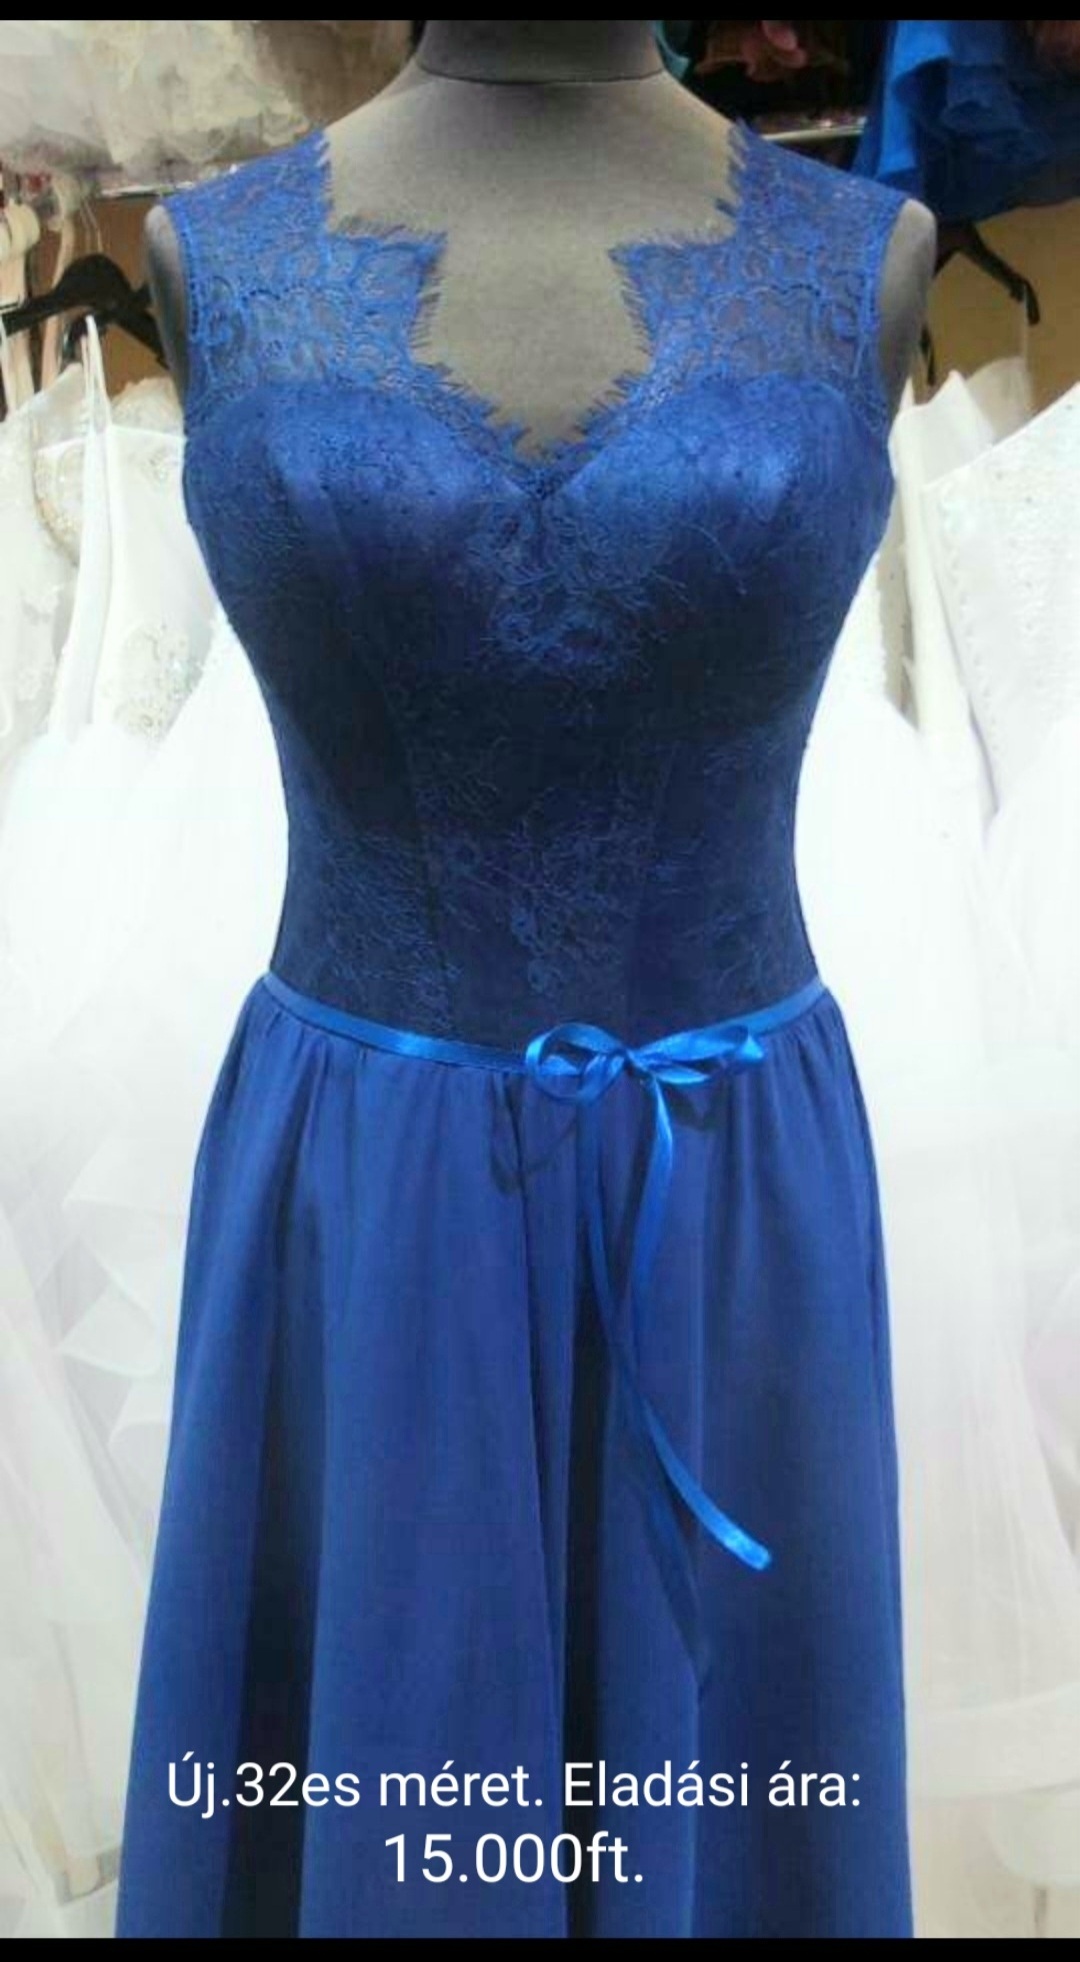 Eladó új kék koszorúslány ruha 32es méret.